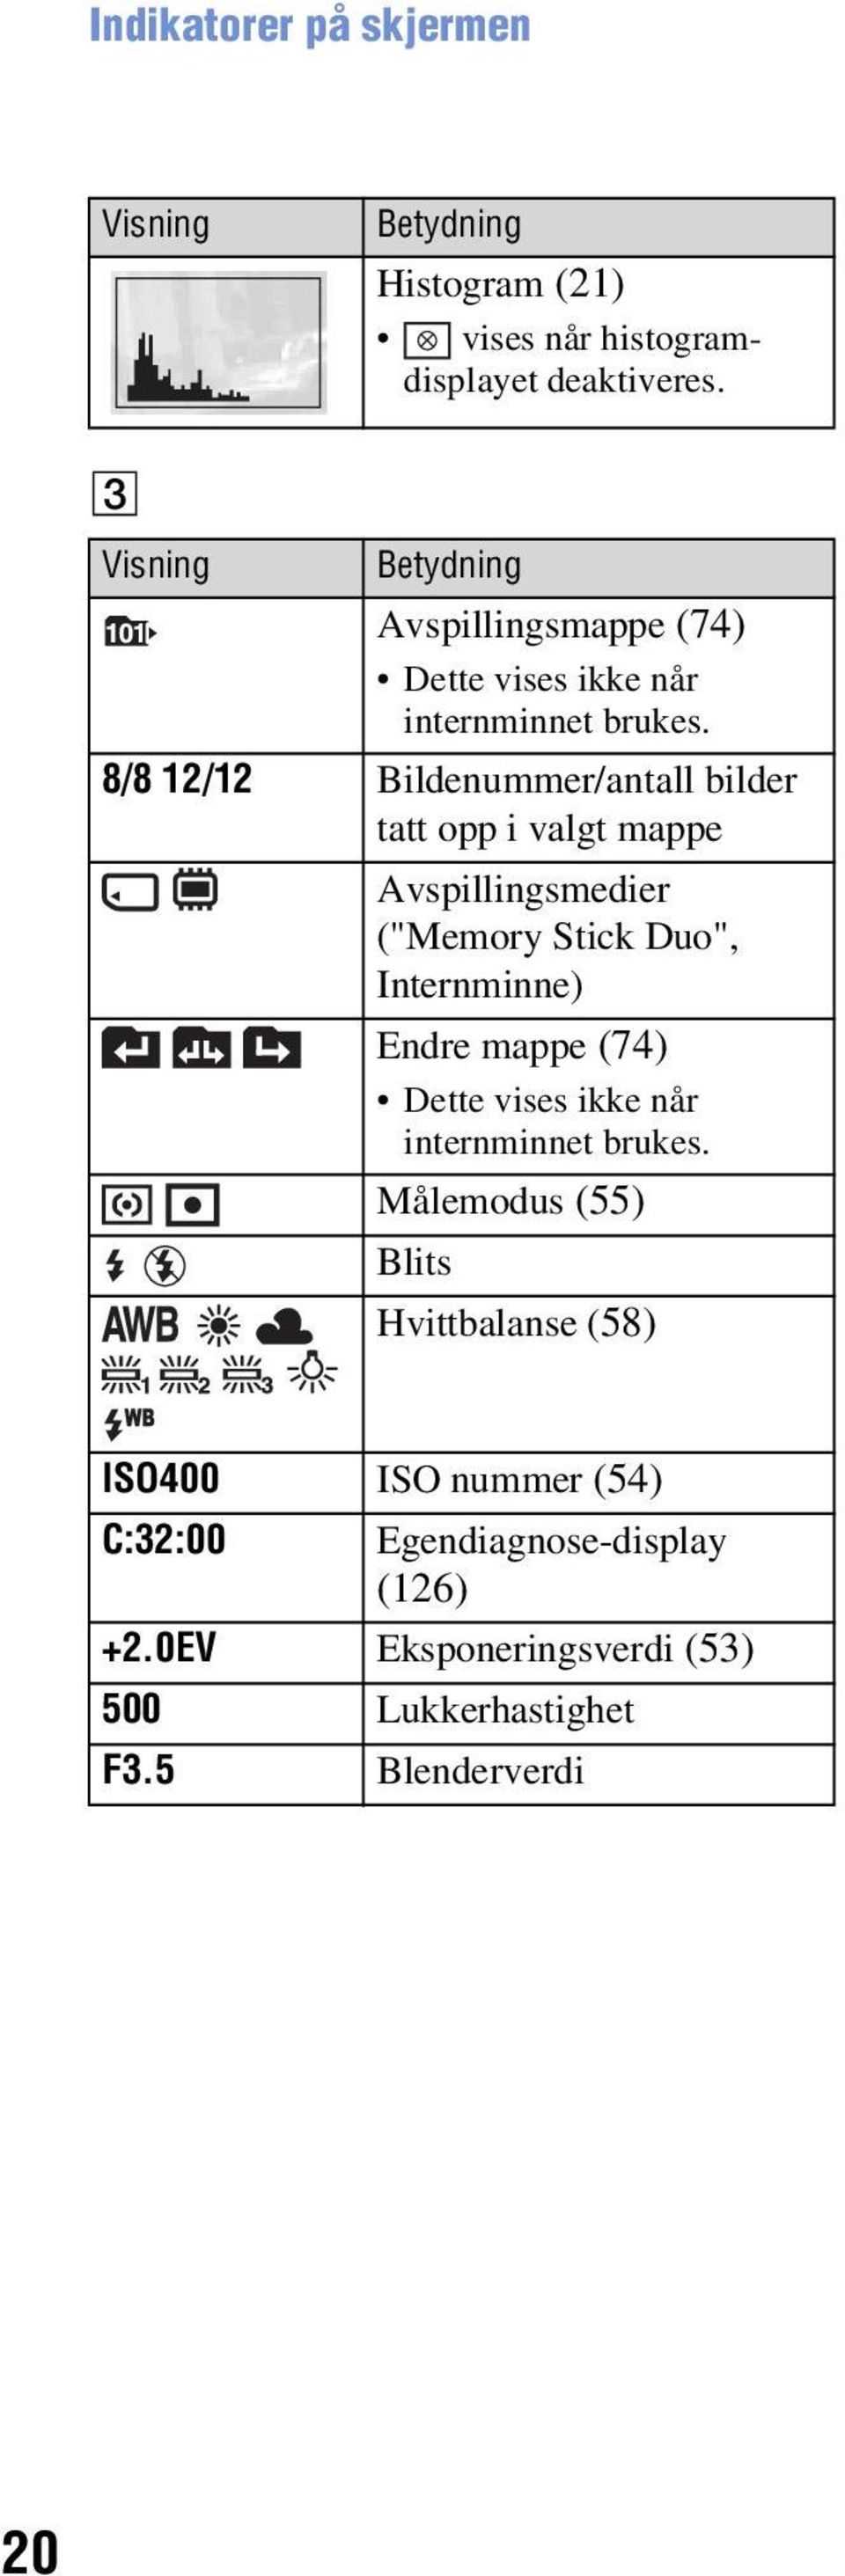 8/8 12/12 Bildenummer/antall bilder tatt opp i valgt mappe Avspillingsmedier ("Memory Stick Duo", Internminne) Endre mappe (74)